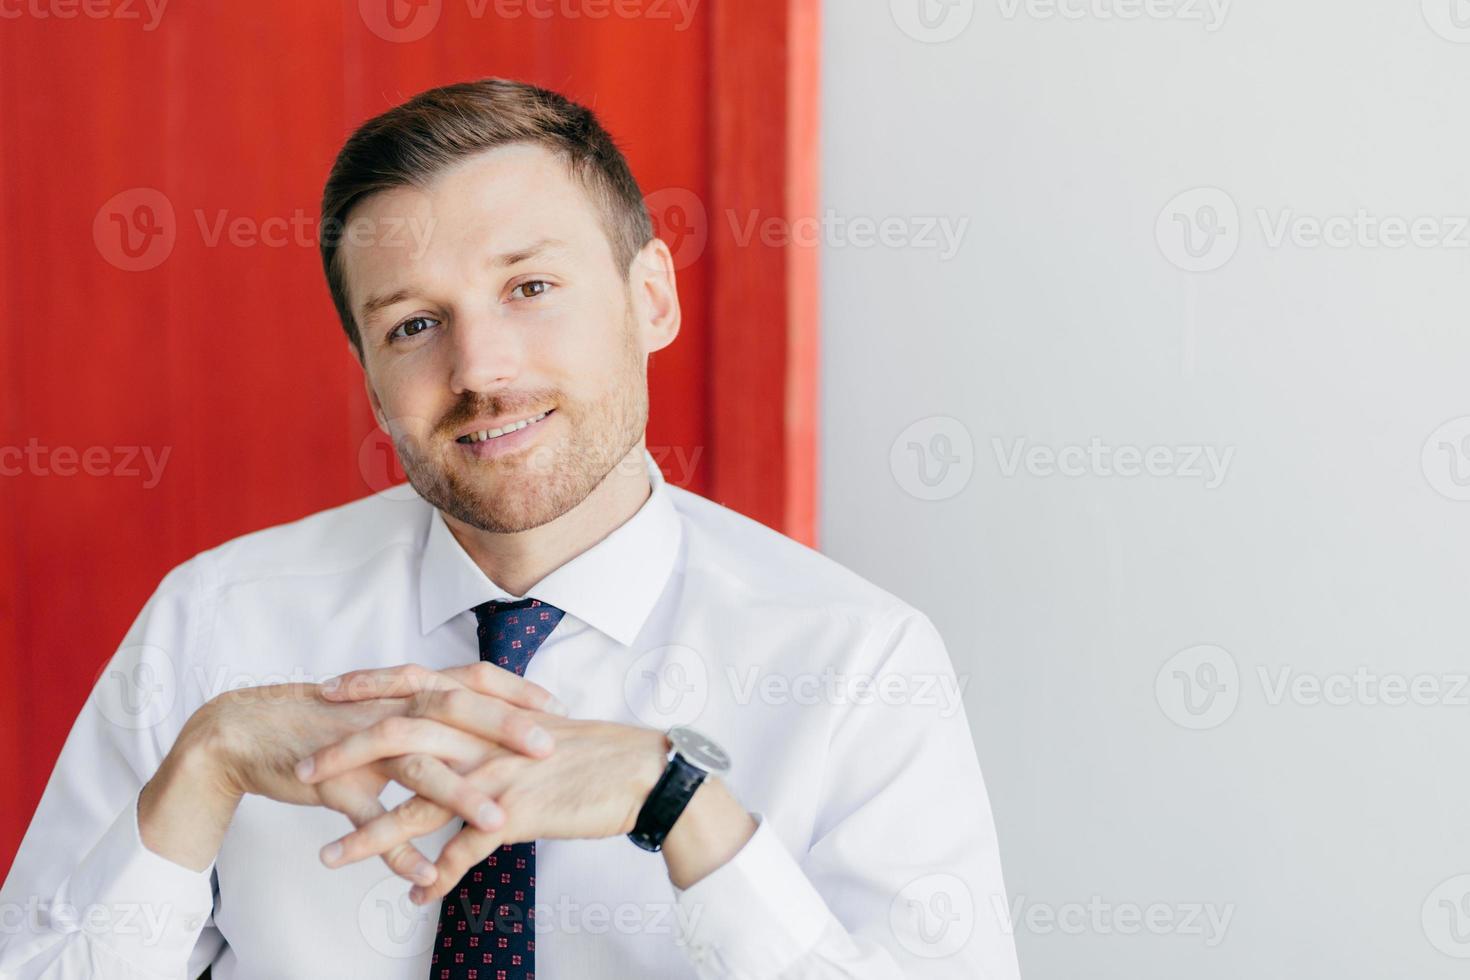 foto van een knappe intelligente man met een zachte glimlach, houdt de handen bij elkaar, draagt een formeel wit overhemd, poseert tegen een rode en witte achtergrond. mannelijke ondernemer met zelfverzekerde uitdrukking. carrière